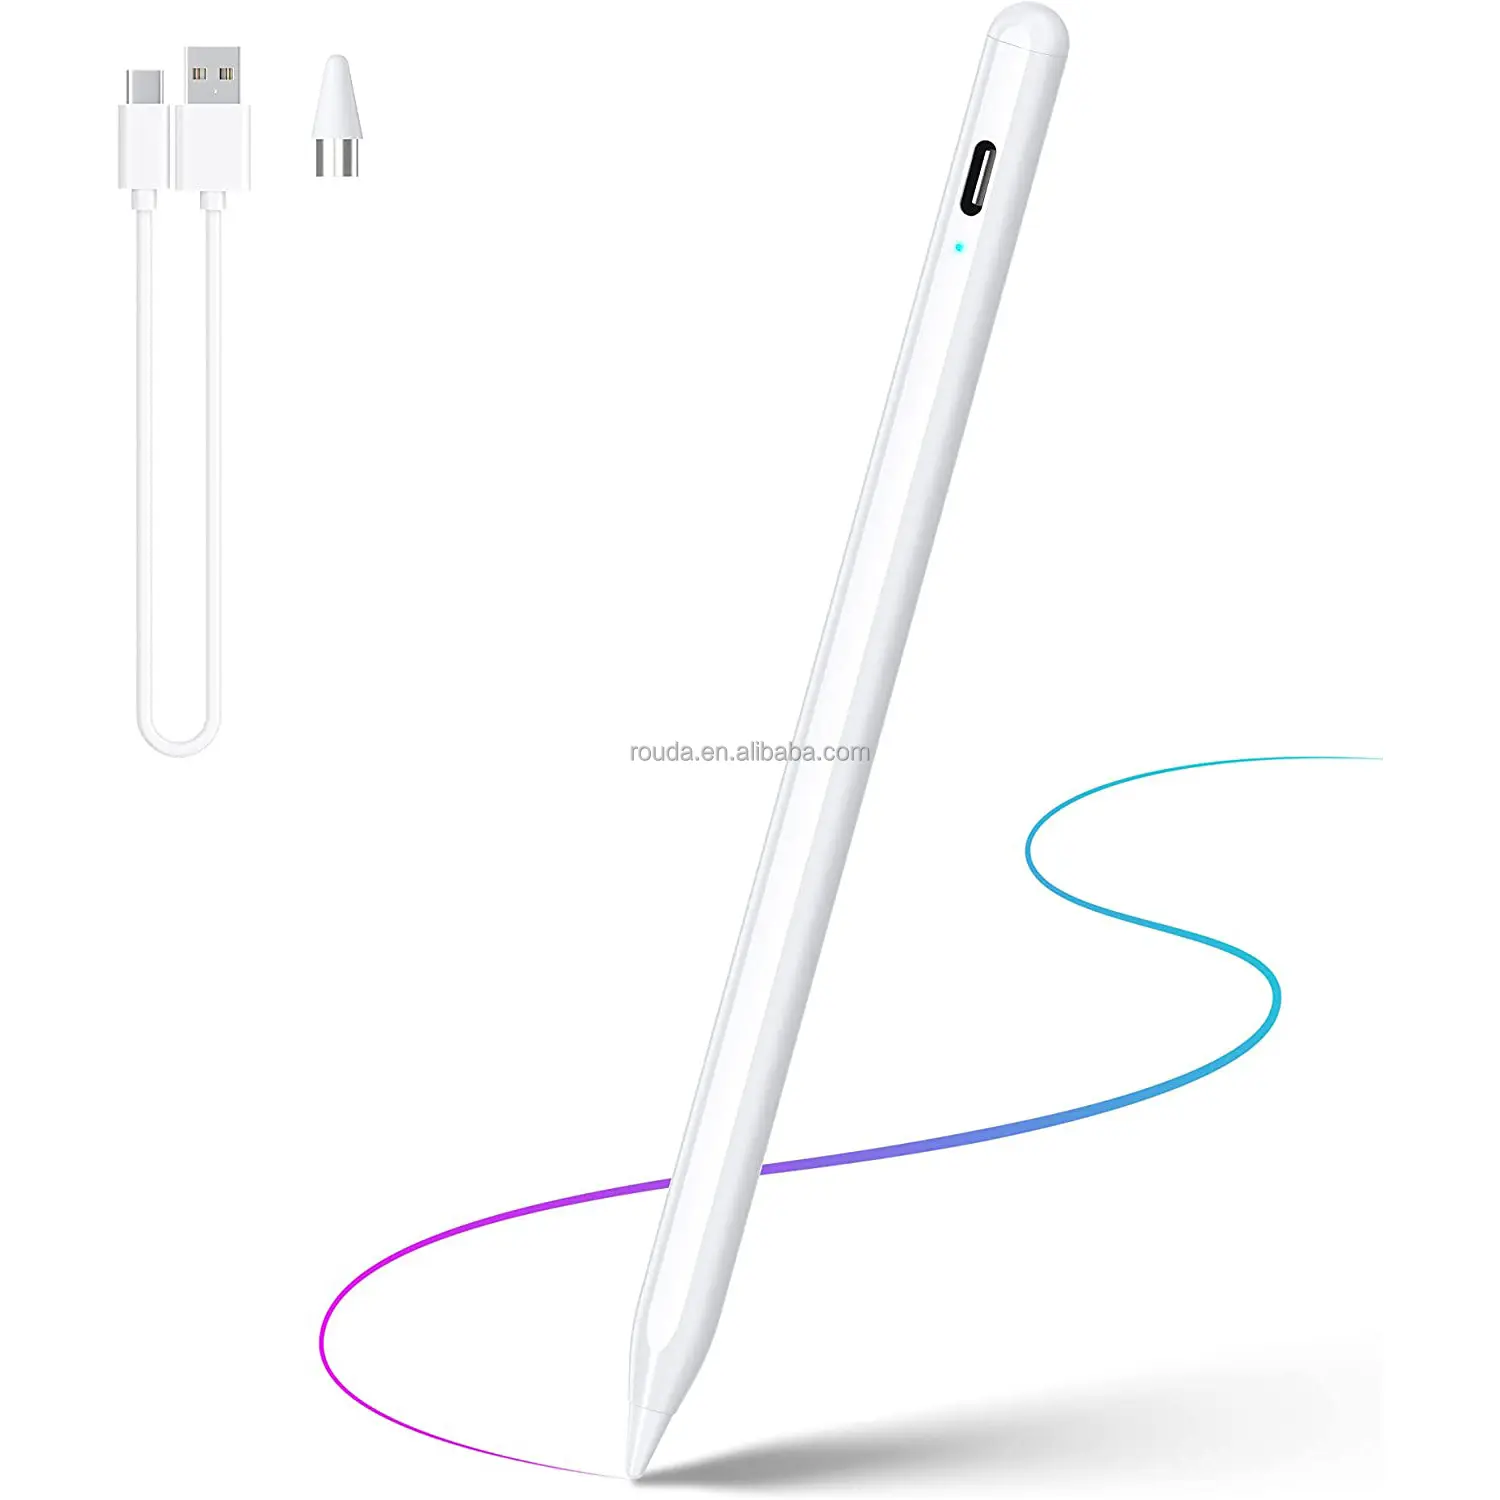 आईपैड आईफोन के लिए जेनेरिक स्टाइलस पेंसिल, एंड्रॉइड और विंडोज स्क्रीन सेल फोन टैबलेट सक्रिय स्टाइलस पेन